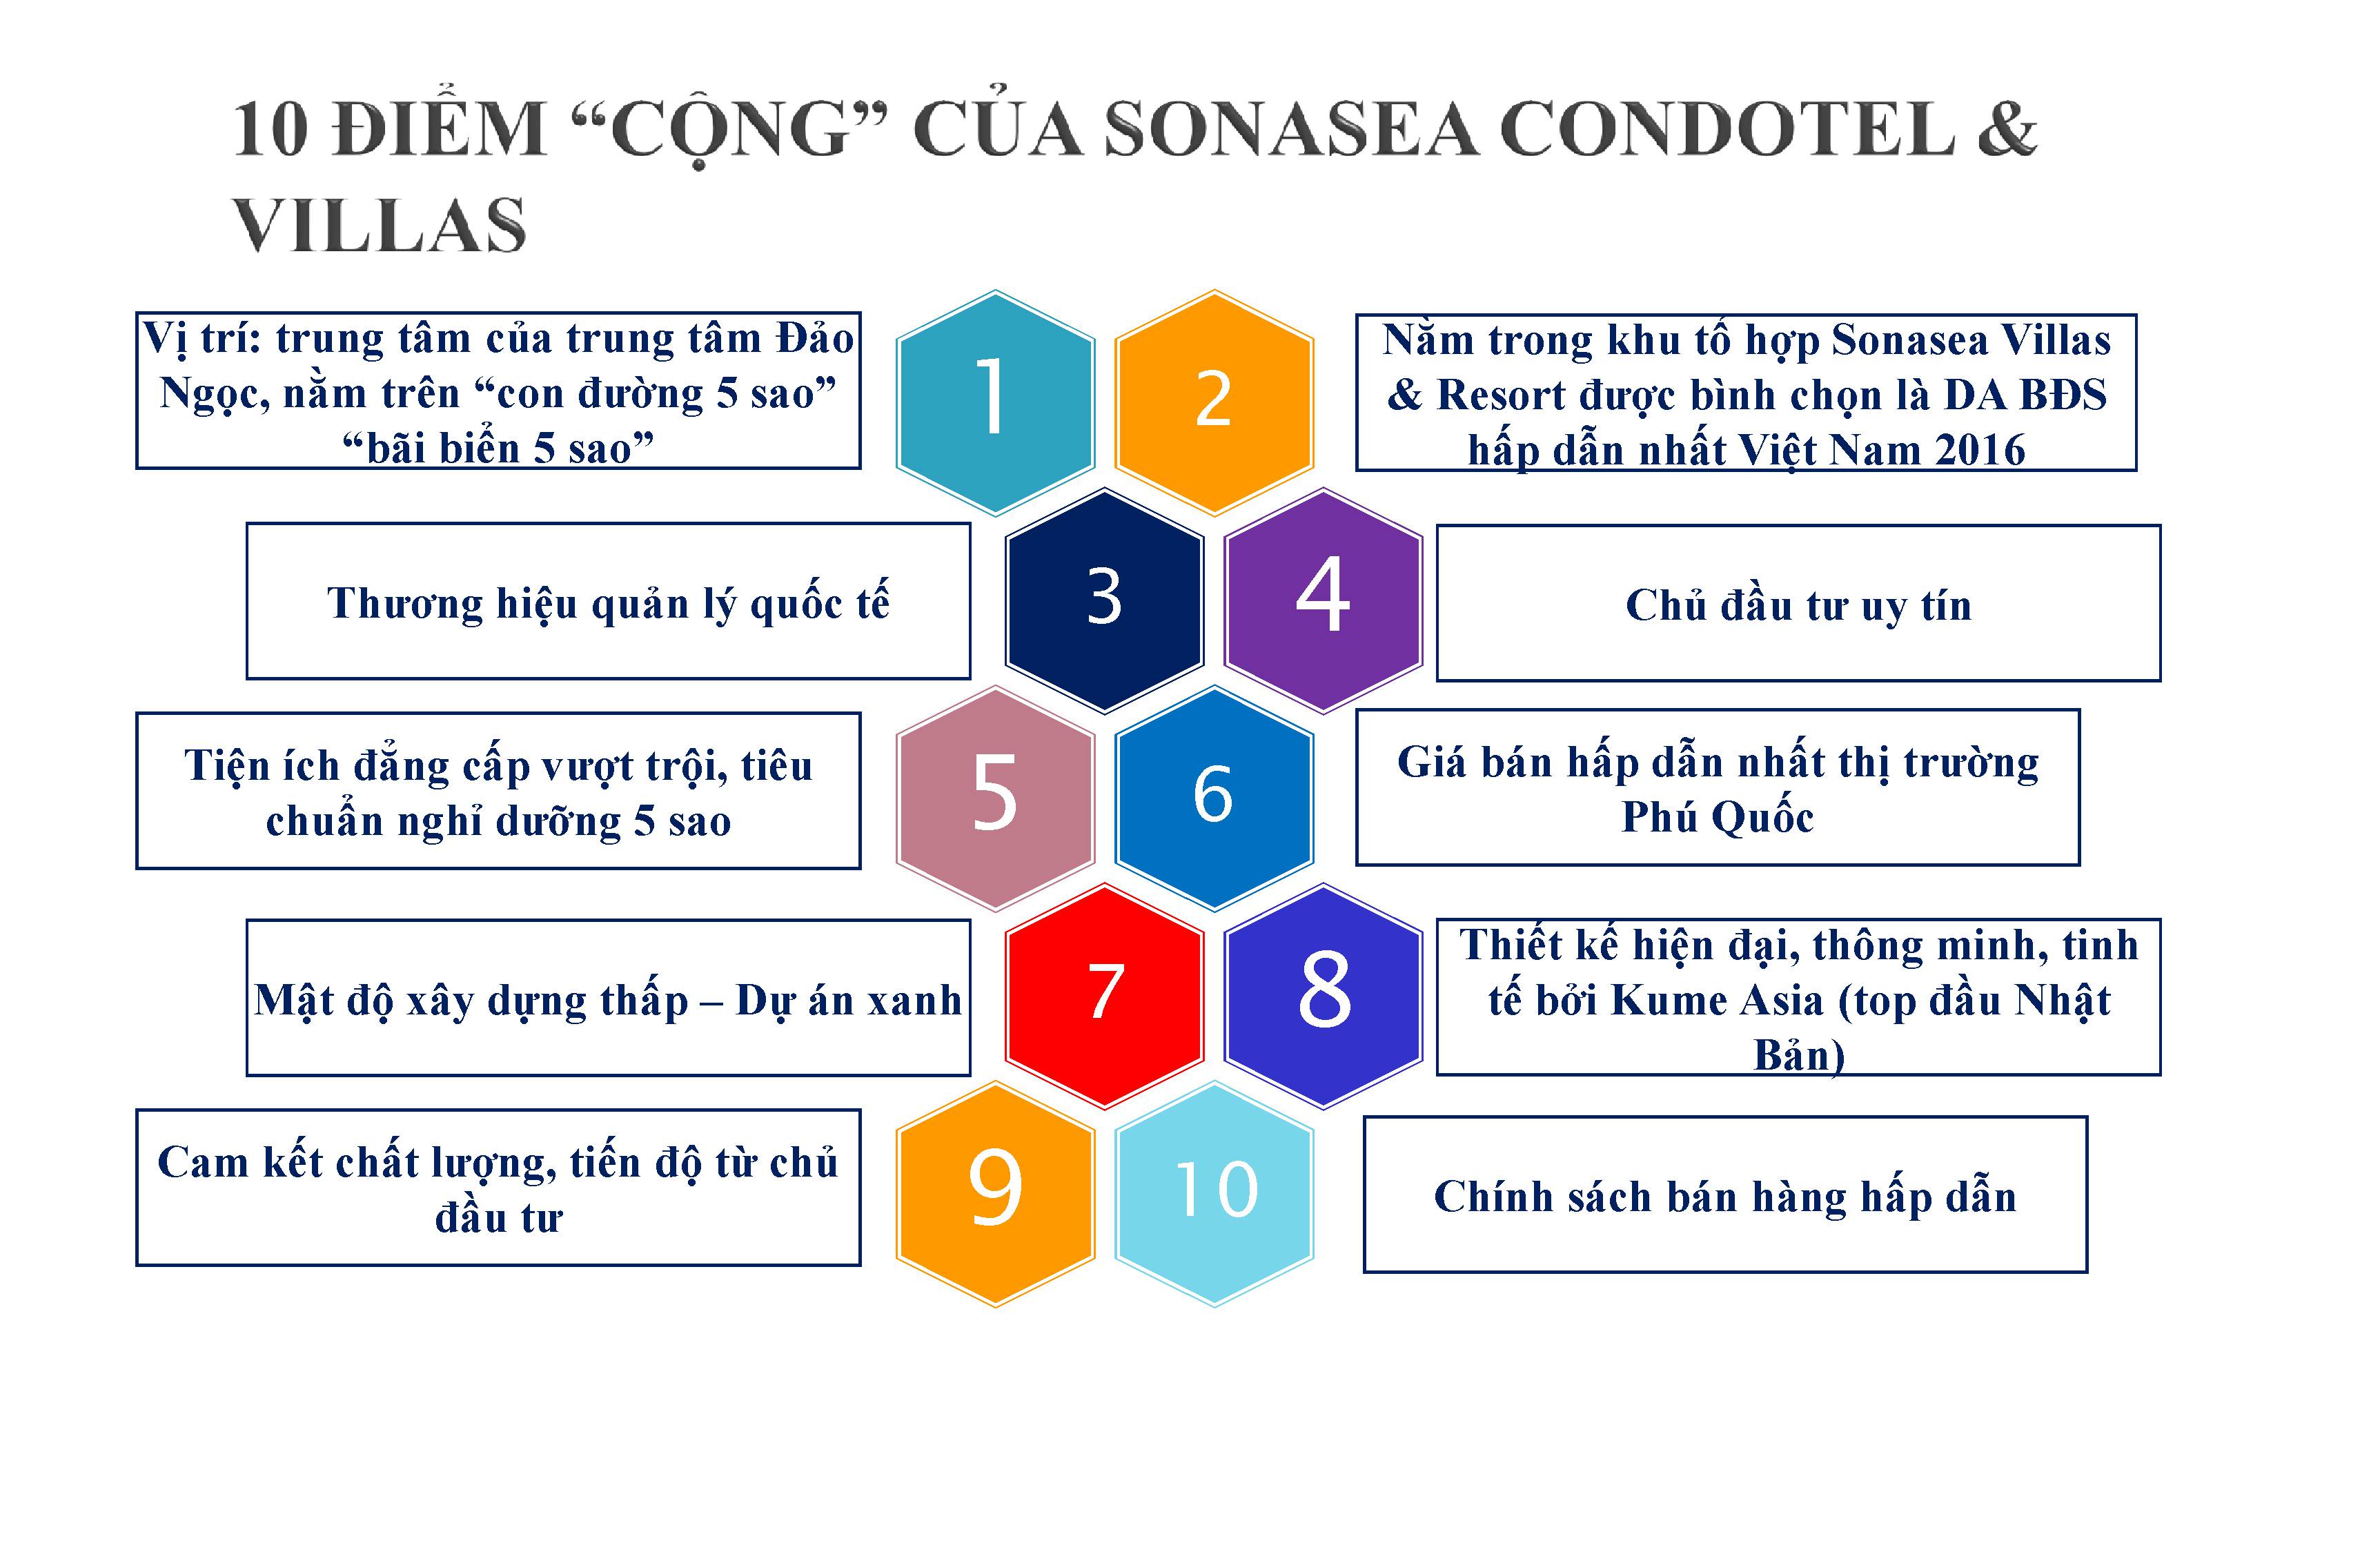 10 điểm công sonasea condotel phú quốc